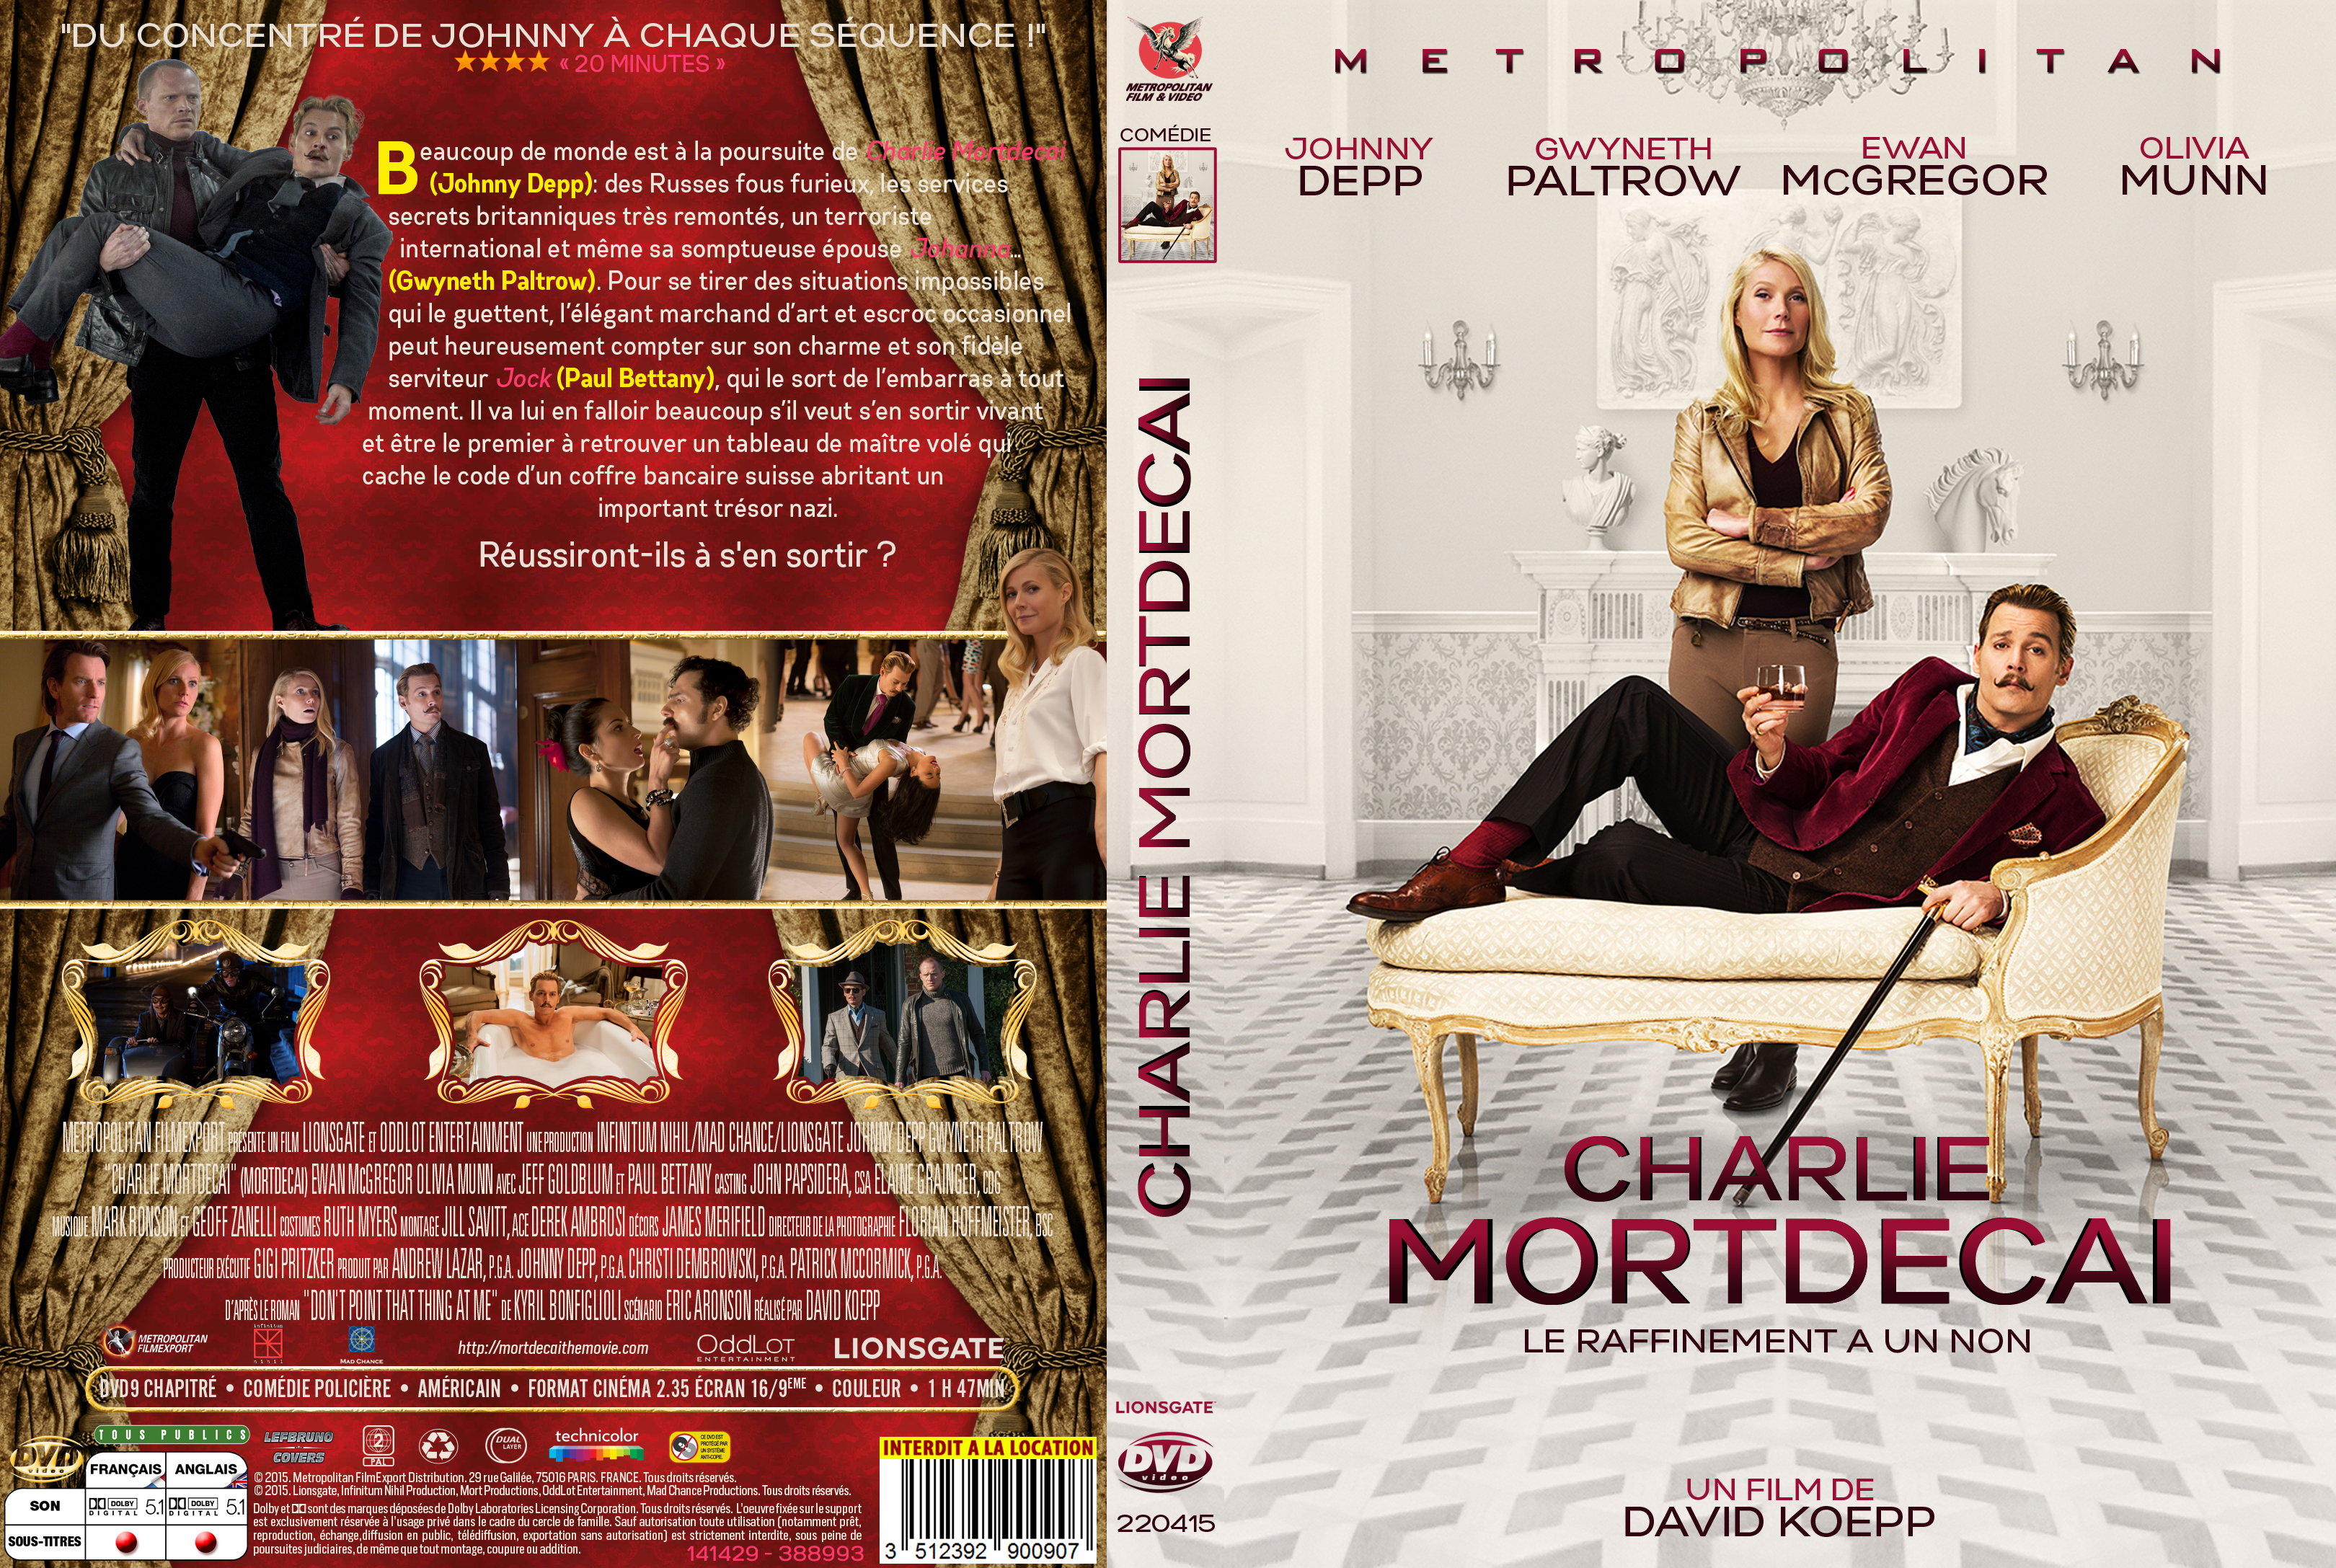 Jaquette DVD Charlie Mortdecai custom v2